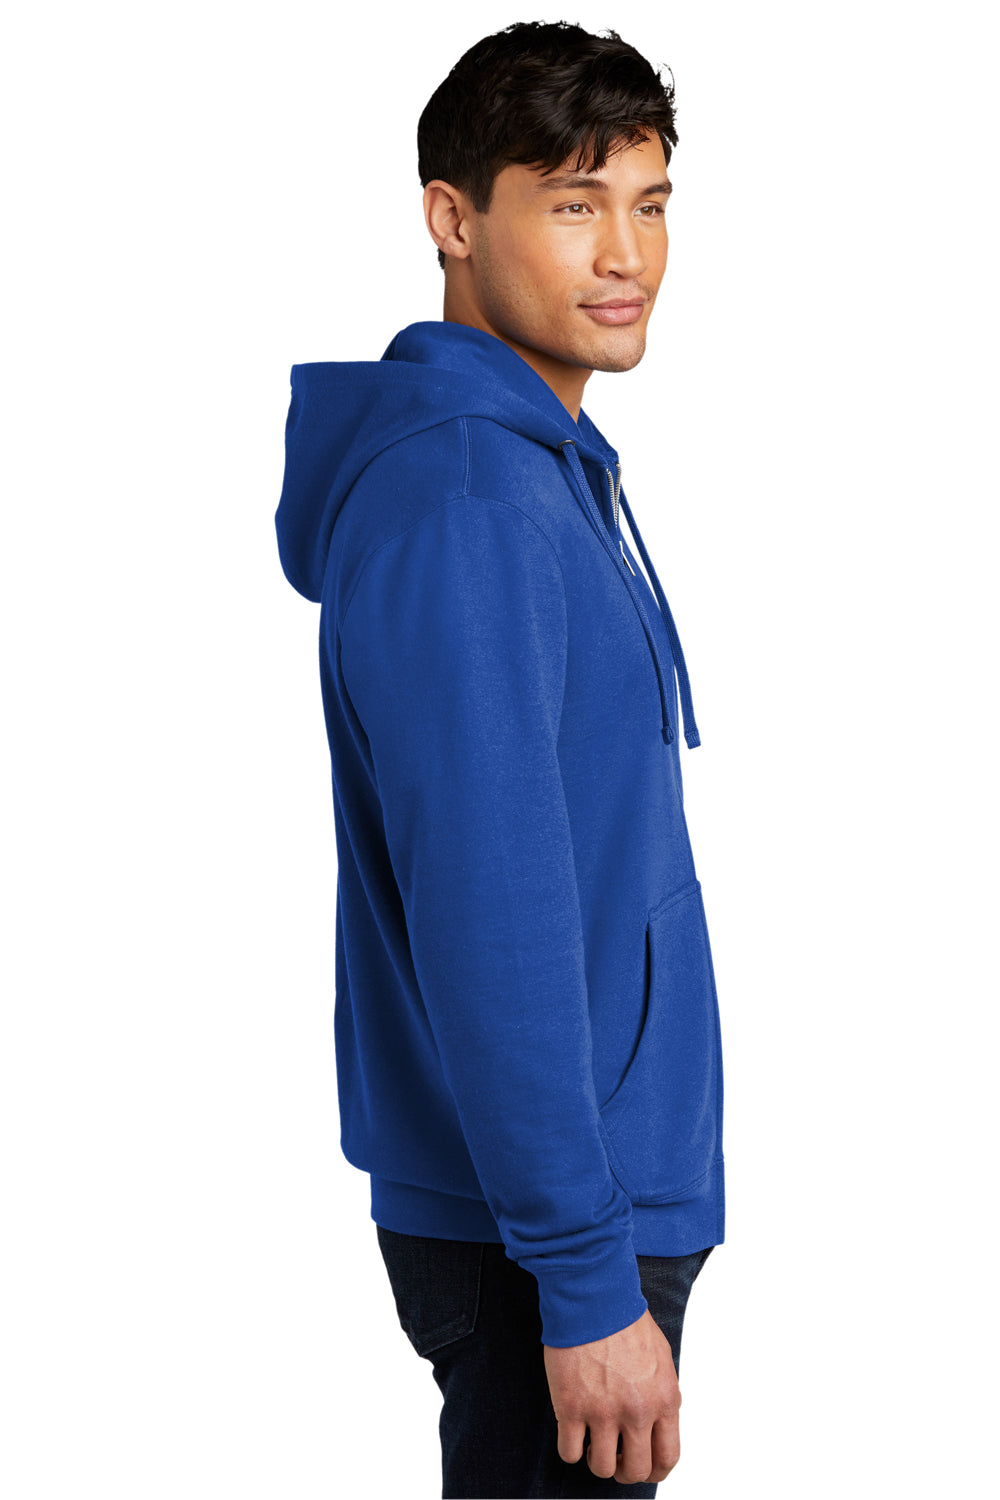 District Mens Very Important Fleece Full Zip Hooded Sweatshirt Hoodie Deep Royal Blue Side